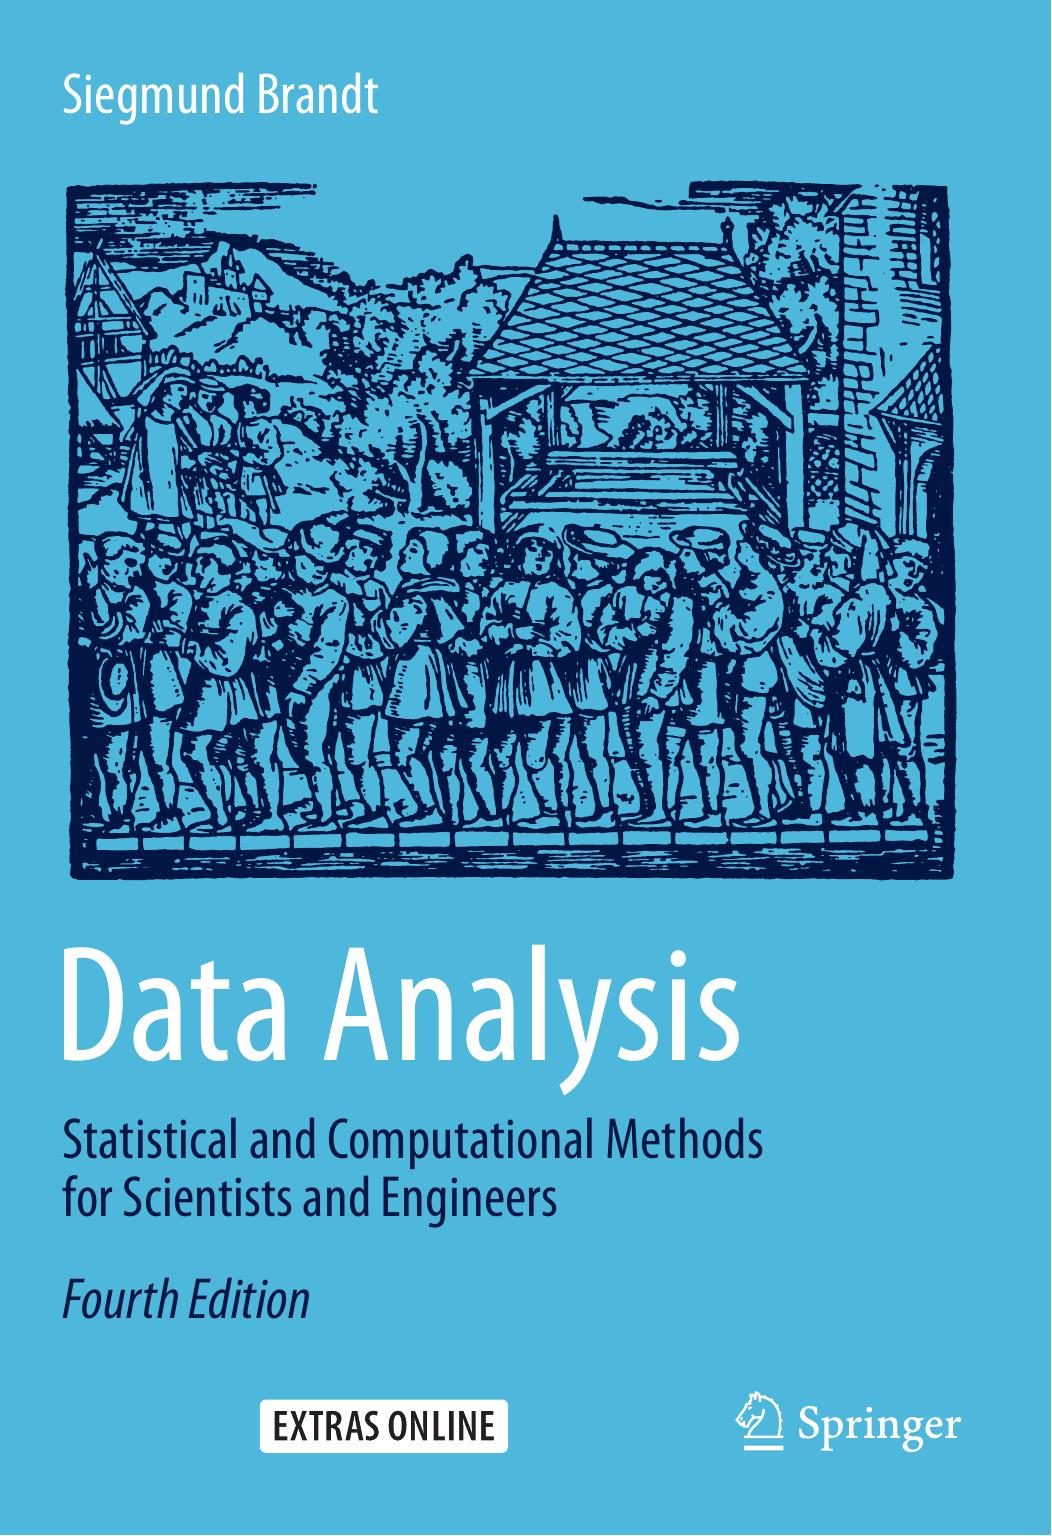 Data Analysis by Siegmund Brandt